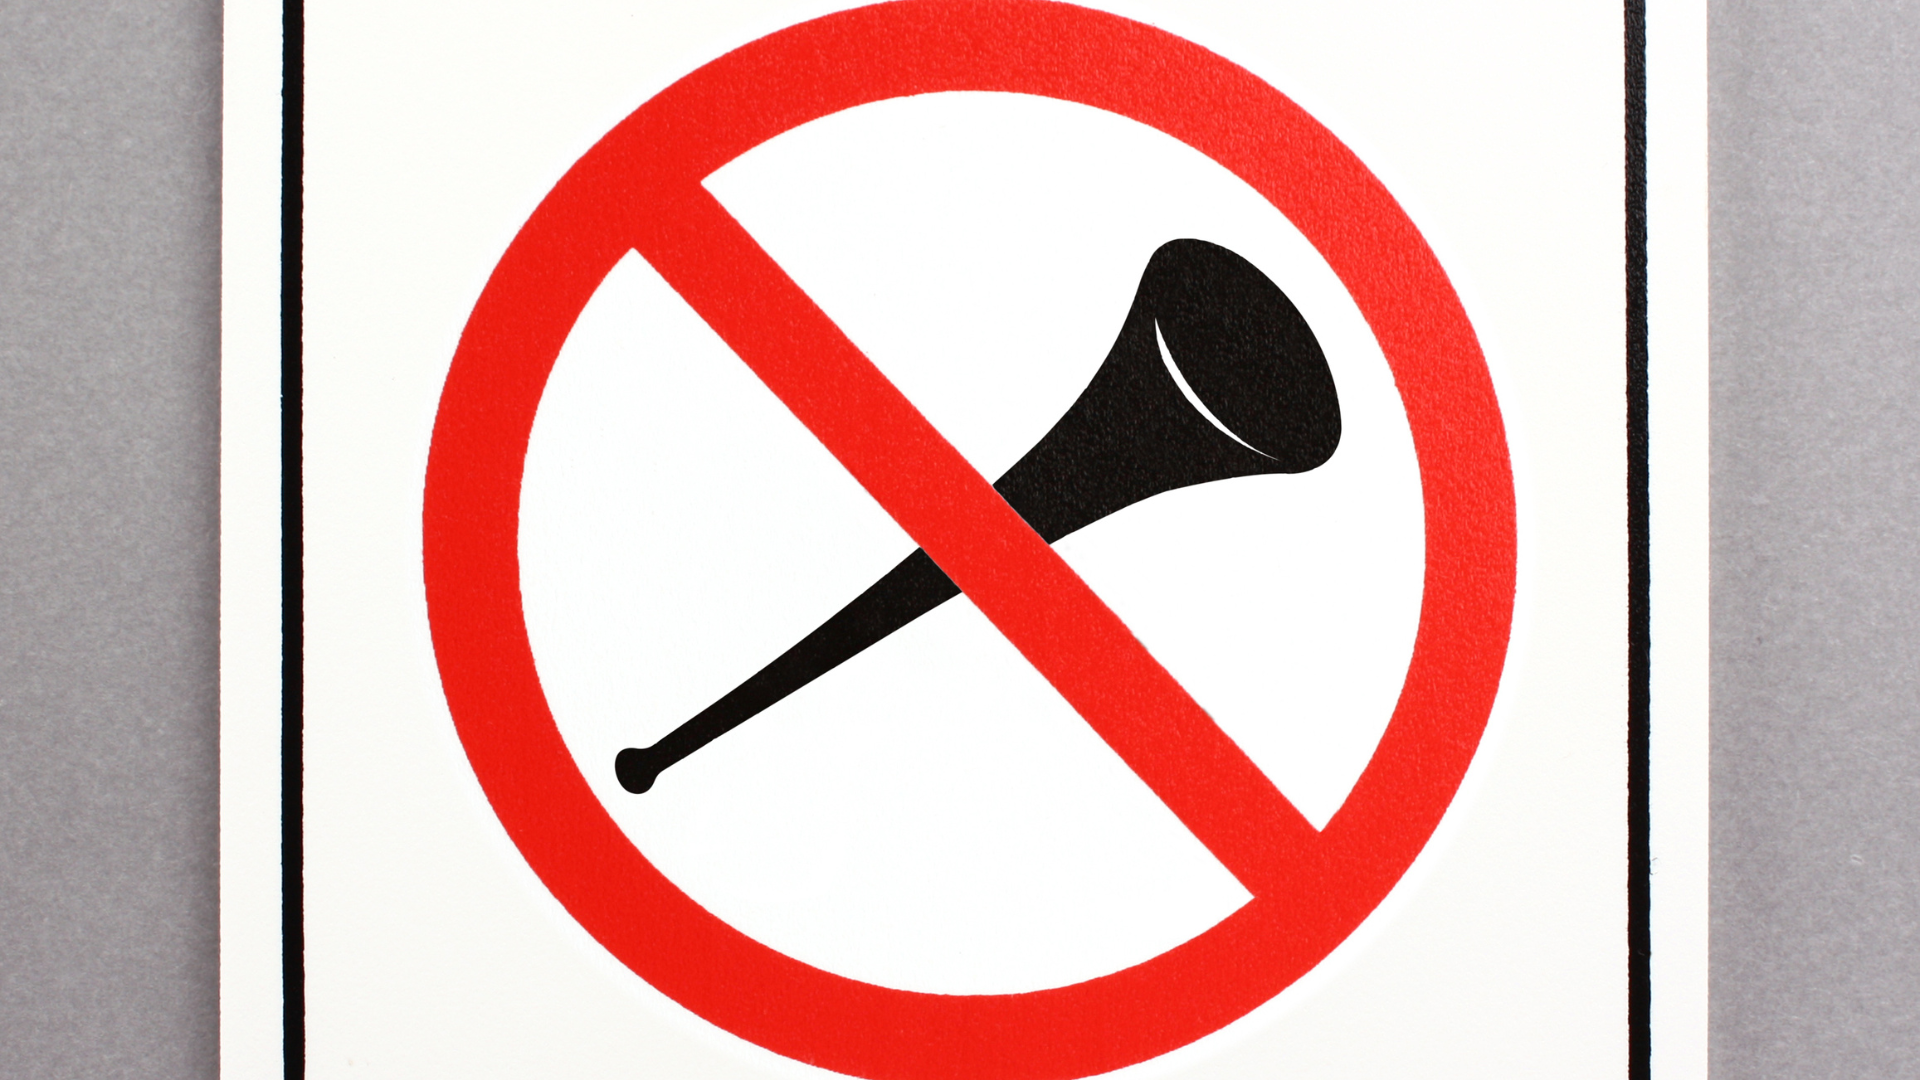 Prohibida la entrada de vuvuzelas / Unsplash